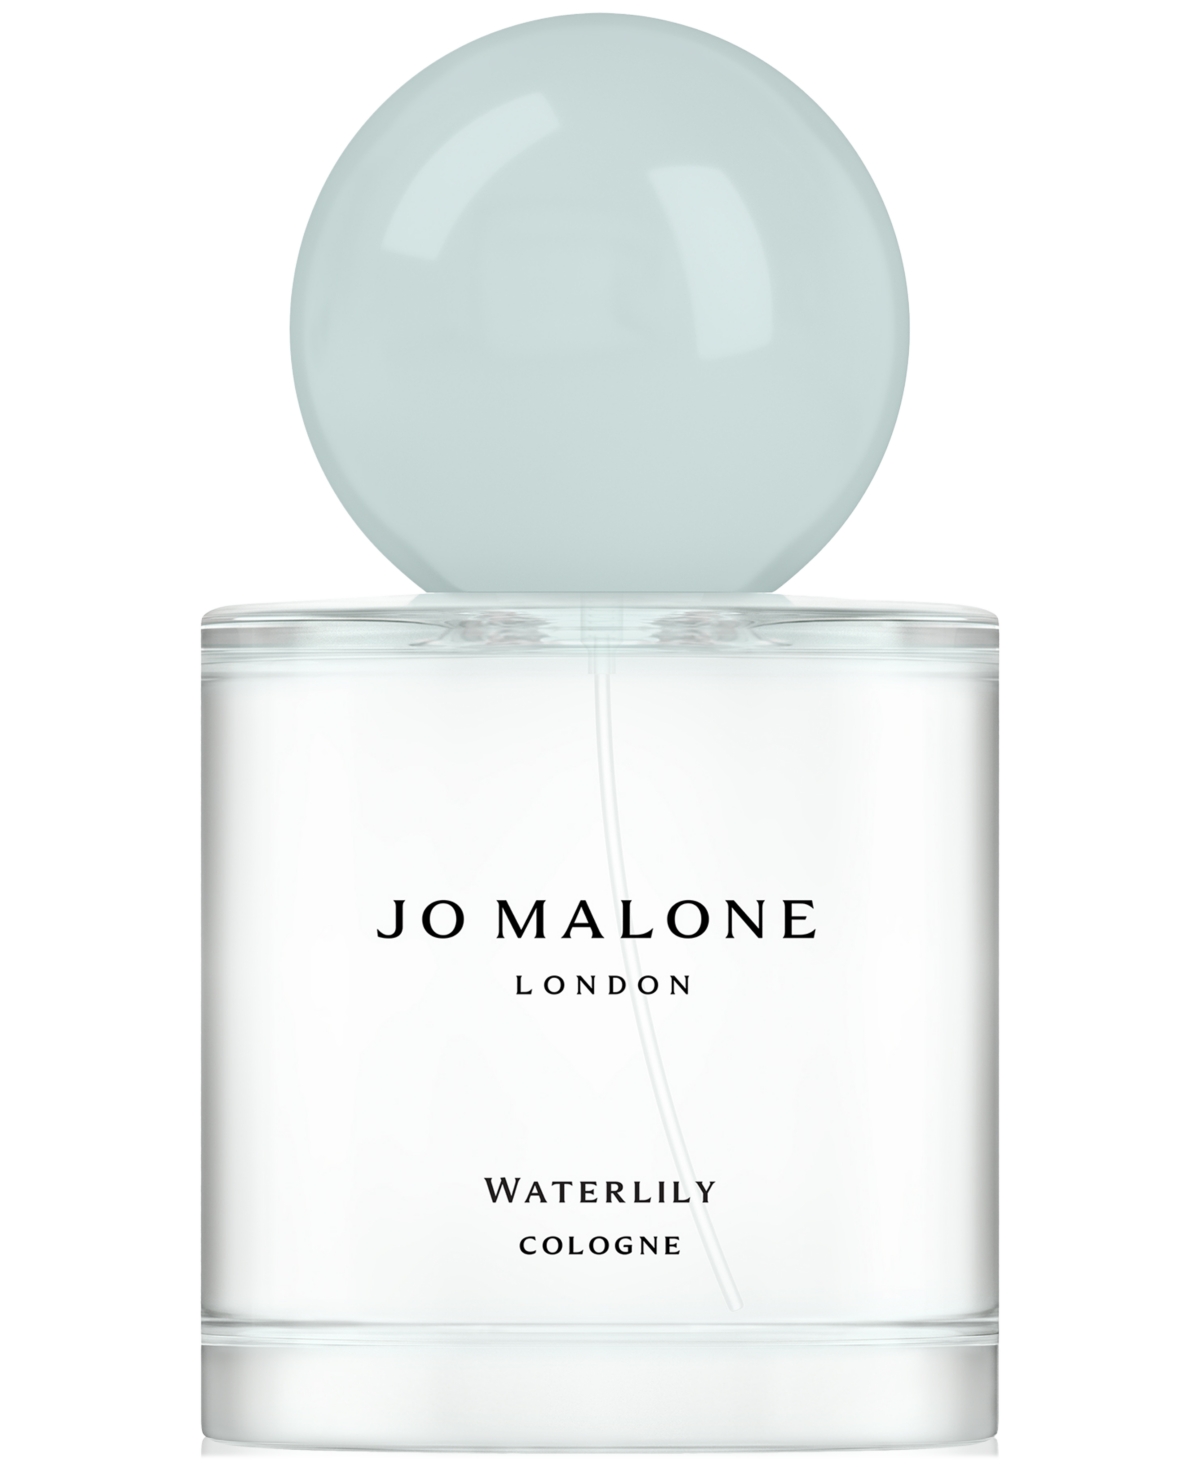 Jo Malone London Waterlily Cologne, 1.7 oz.